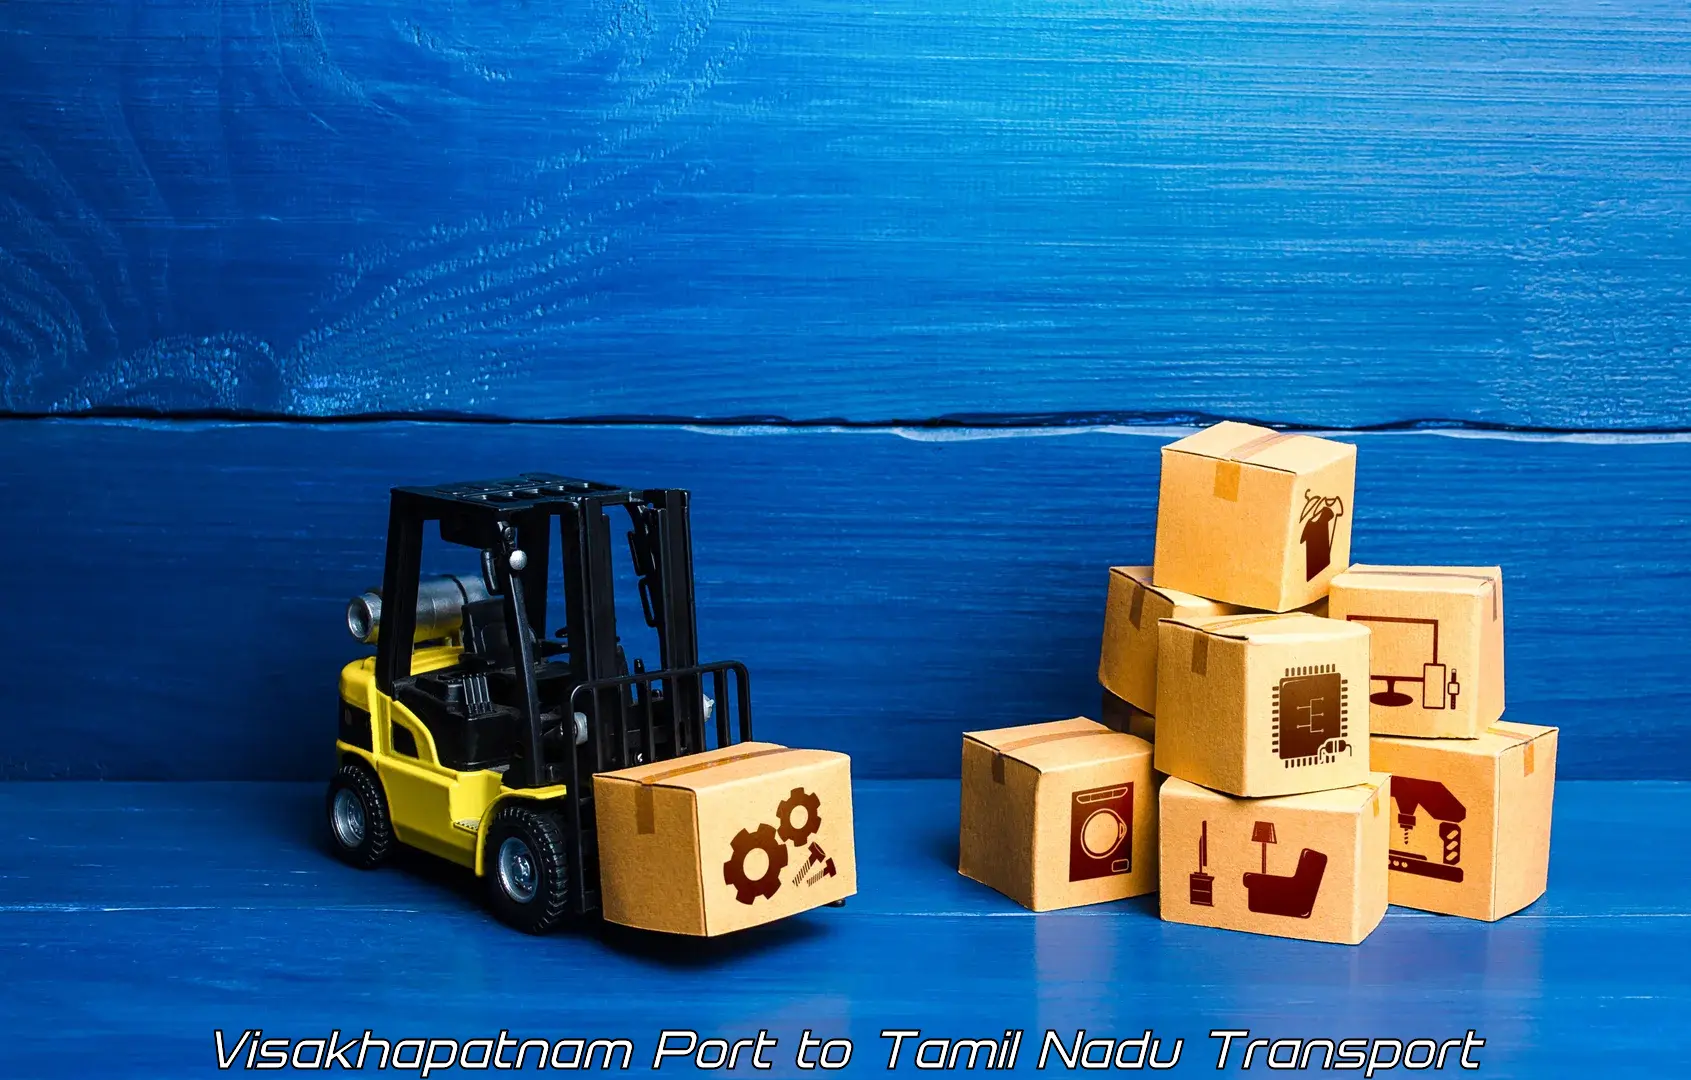 Shipping partner Visakhapatnam Port to Tamil Nadu